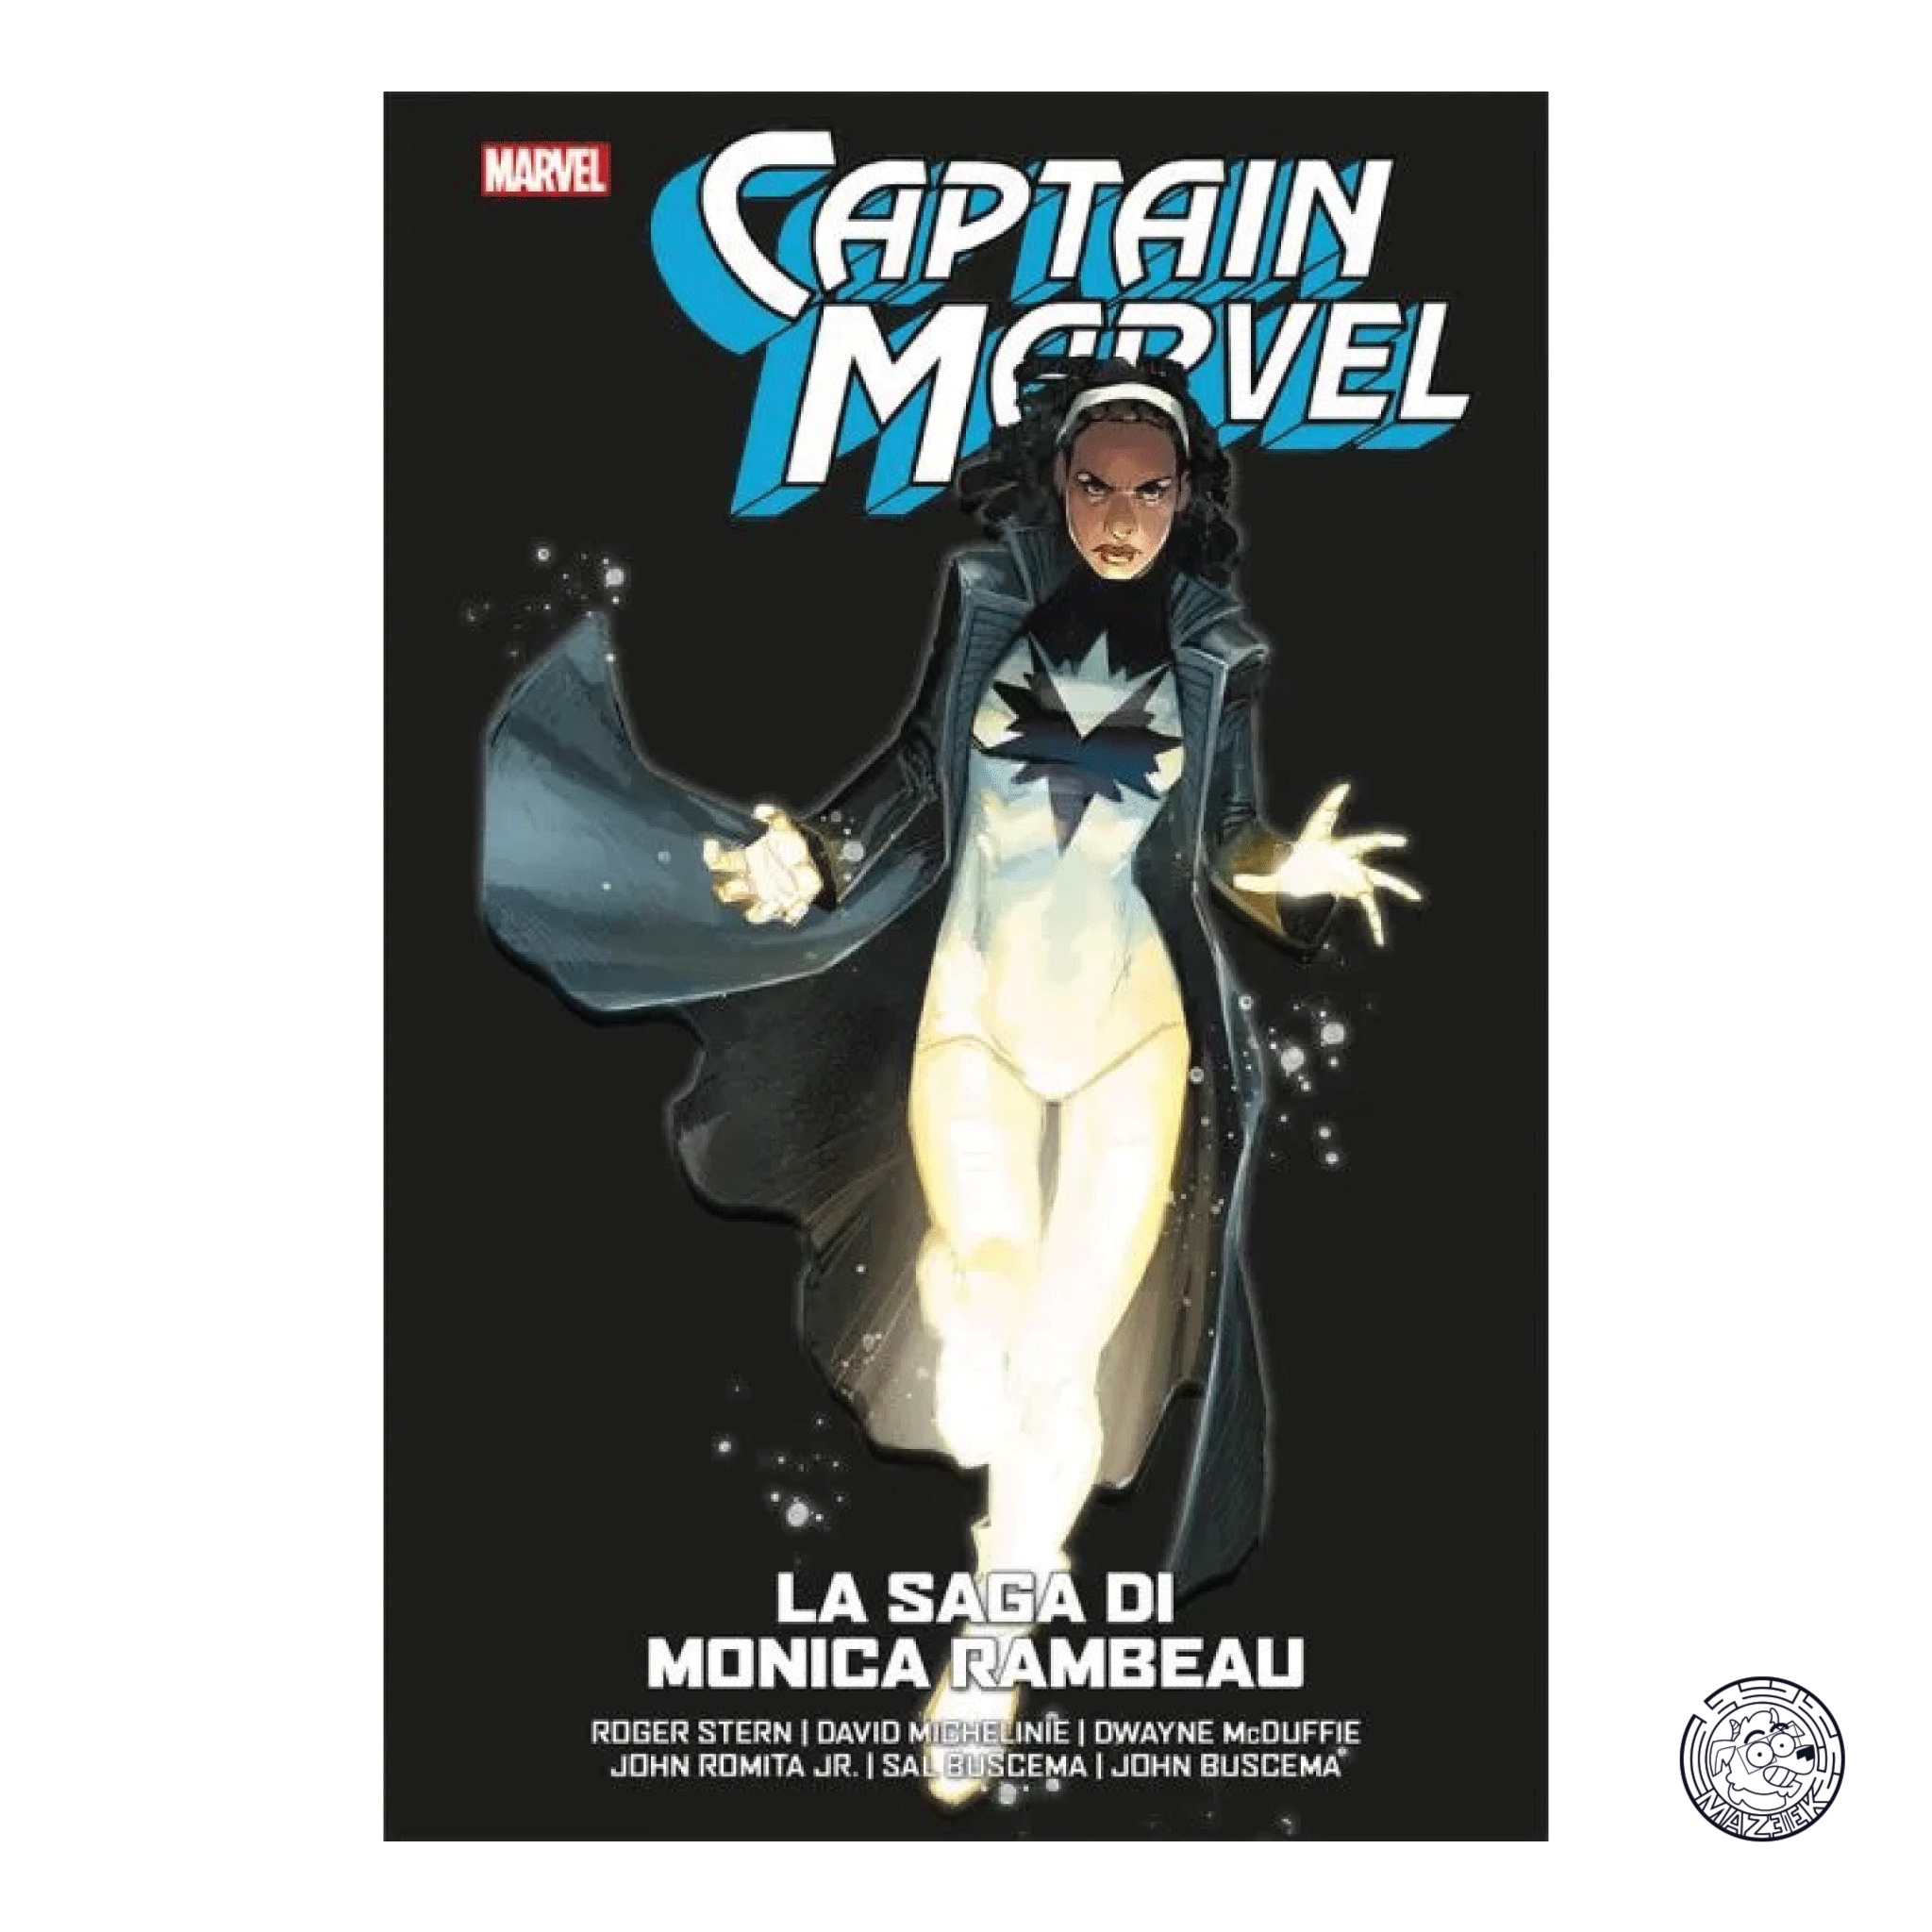 Captain Marvel – The Monica Rambeau Saga